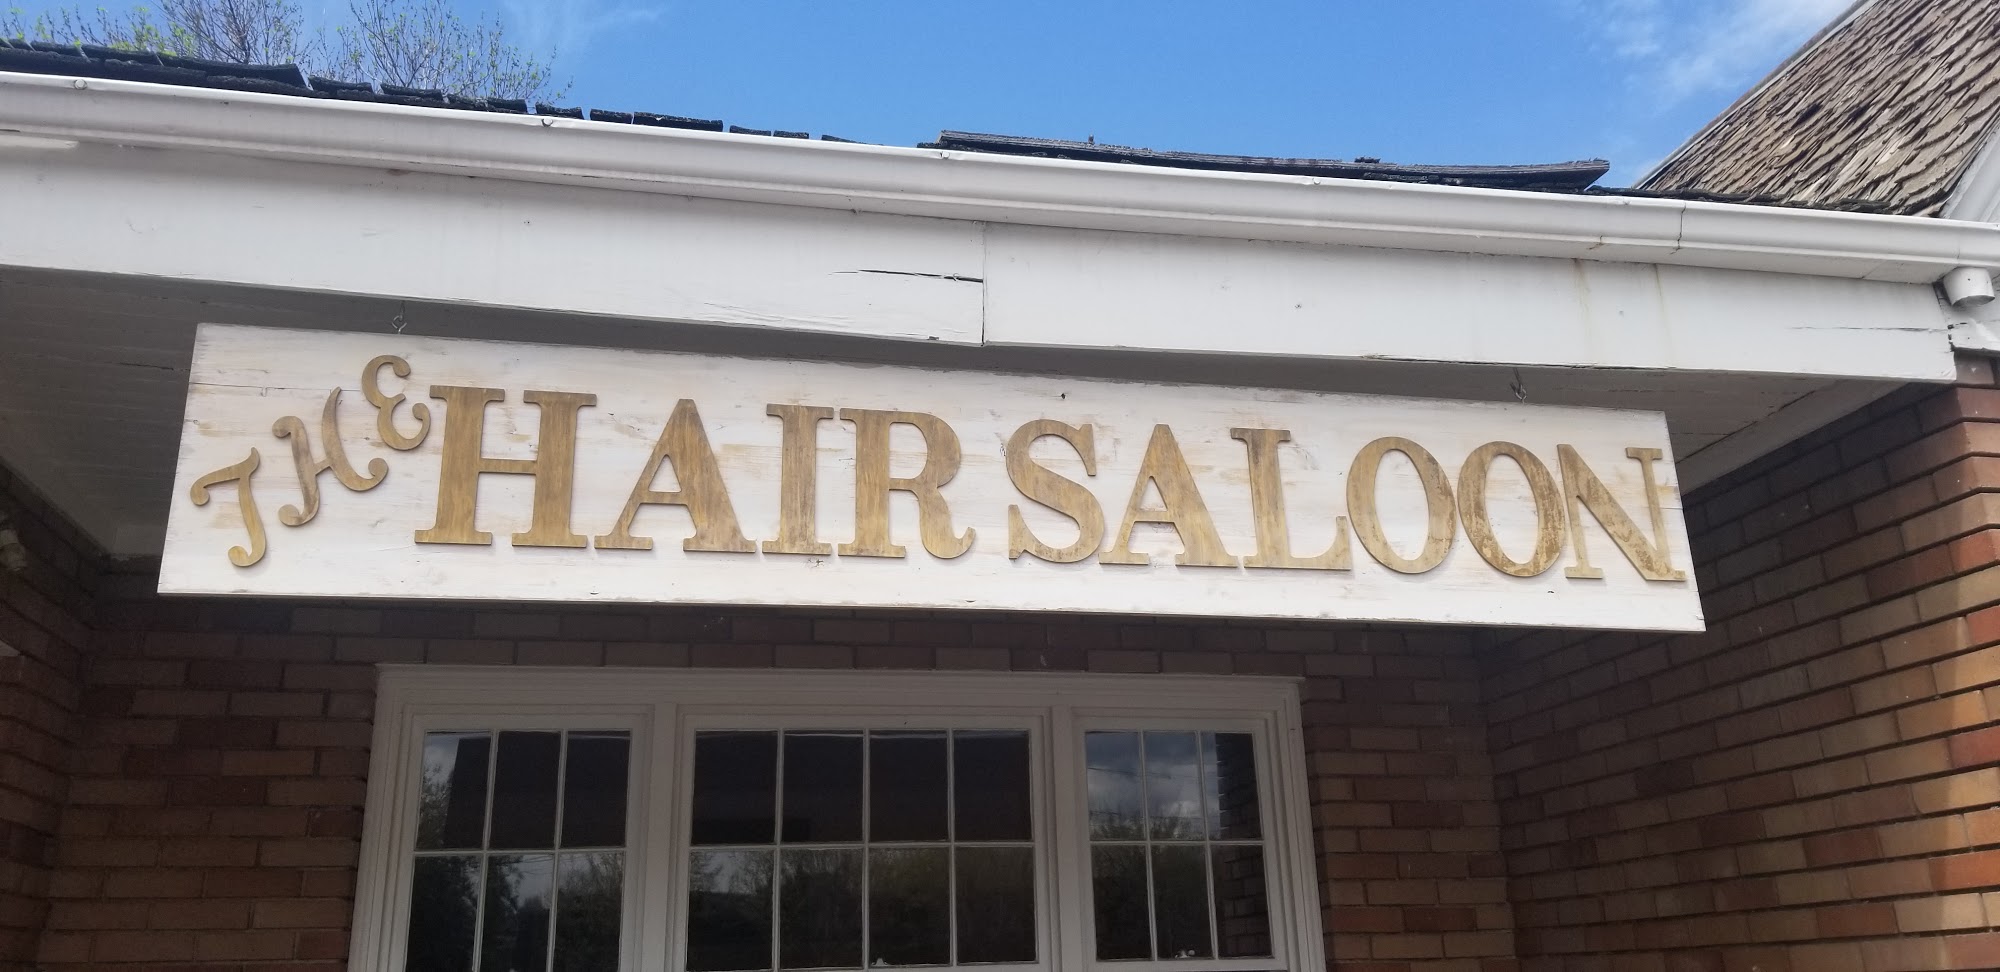 The Hair Saloon